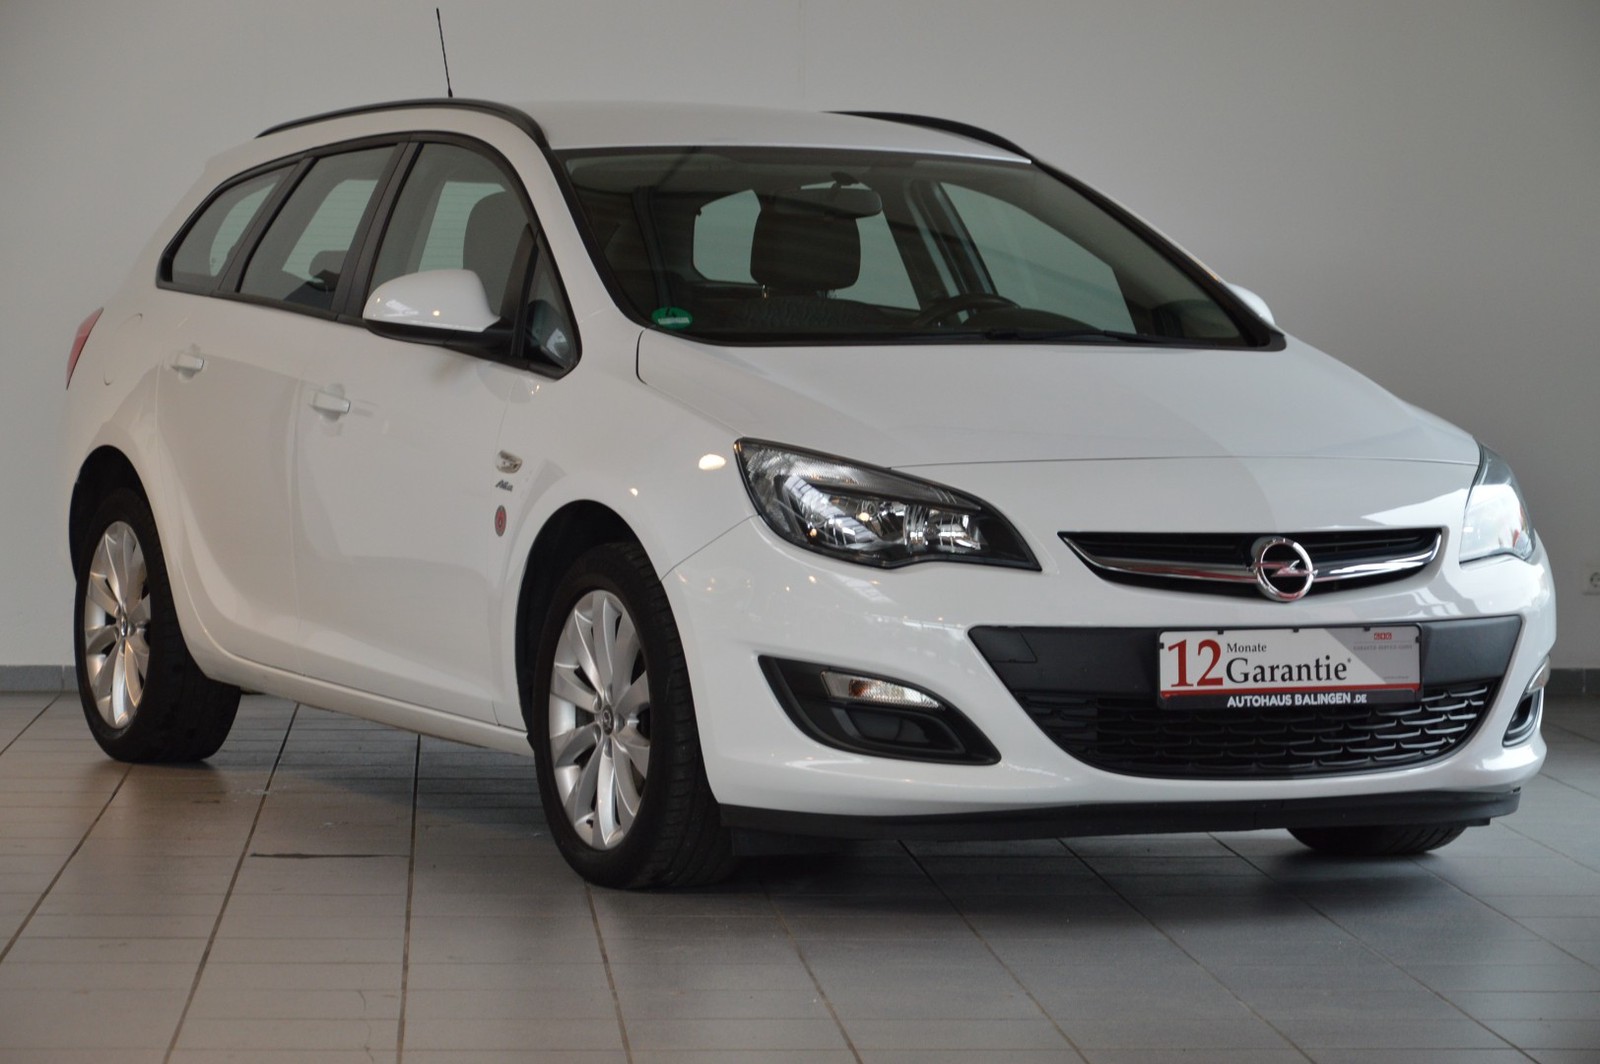 Opel Astra J Sports Tourer Active gebraucht kaufen in Balingen Preis 7990  eur - Int.Nr.: 1176 VERKAUFT